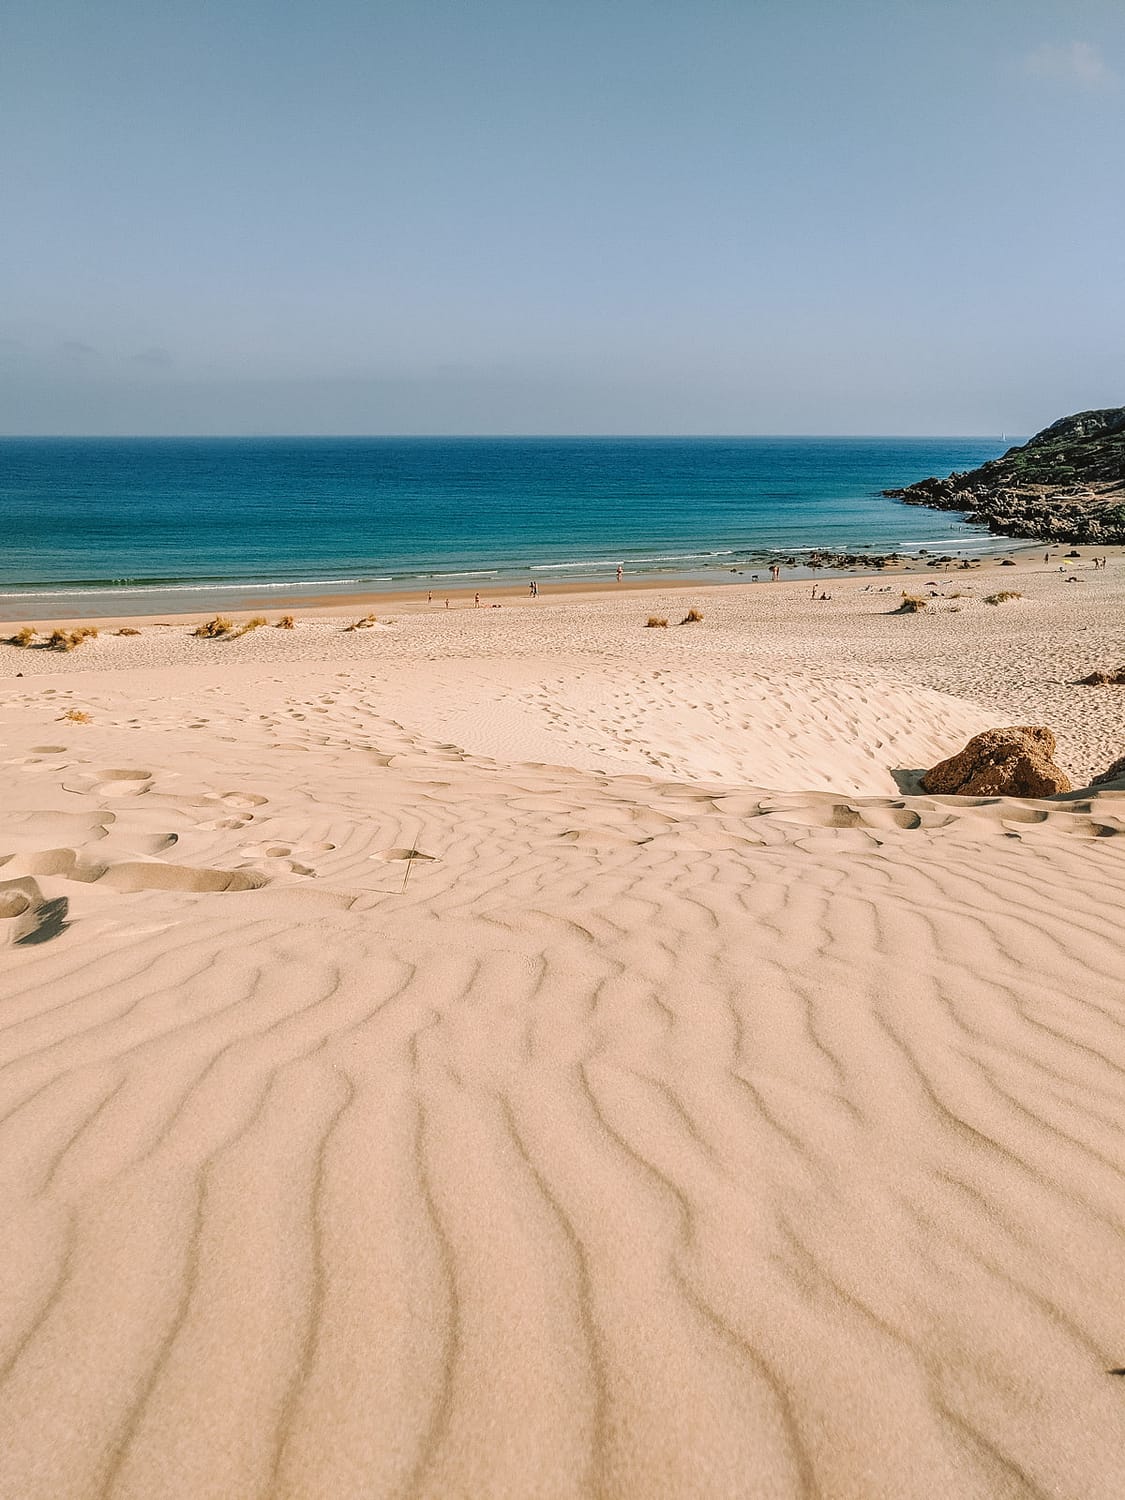 Wild beach near Tarifa